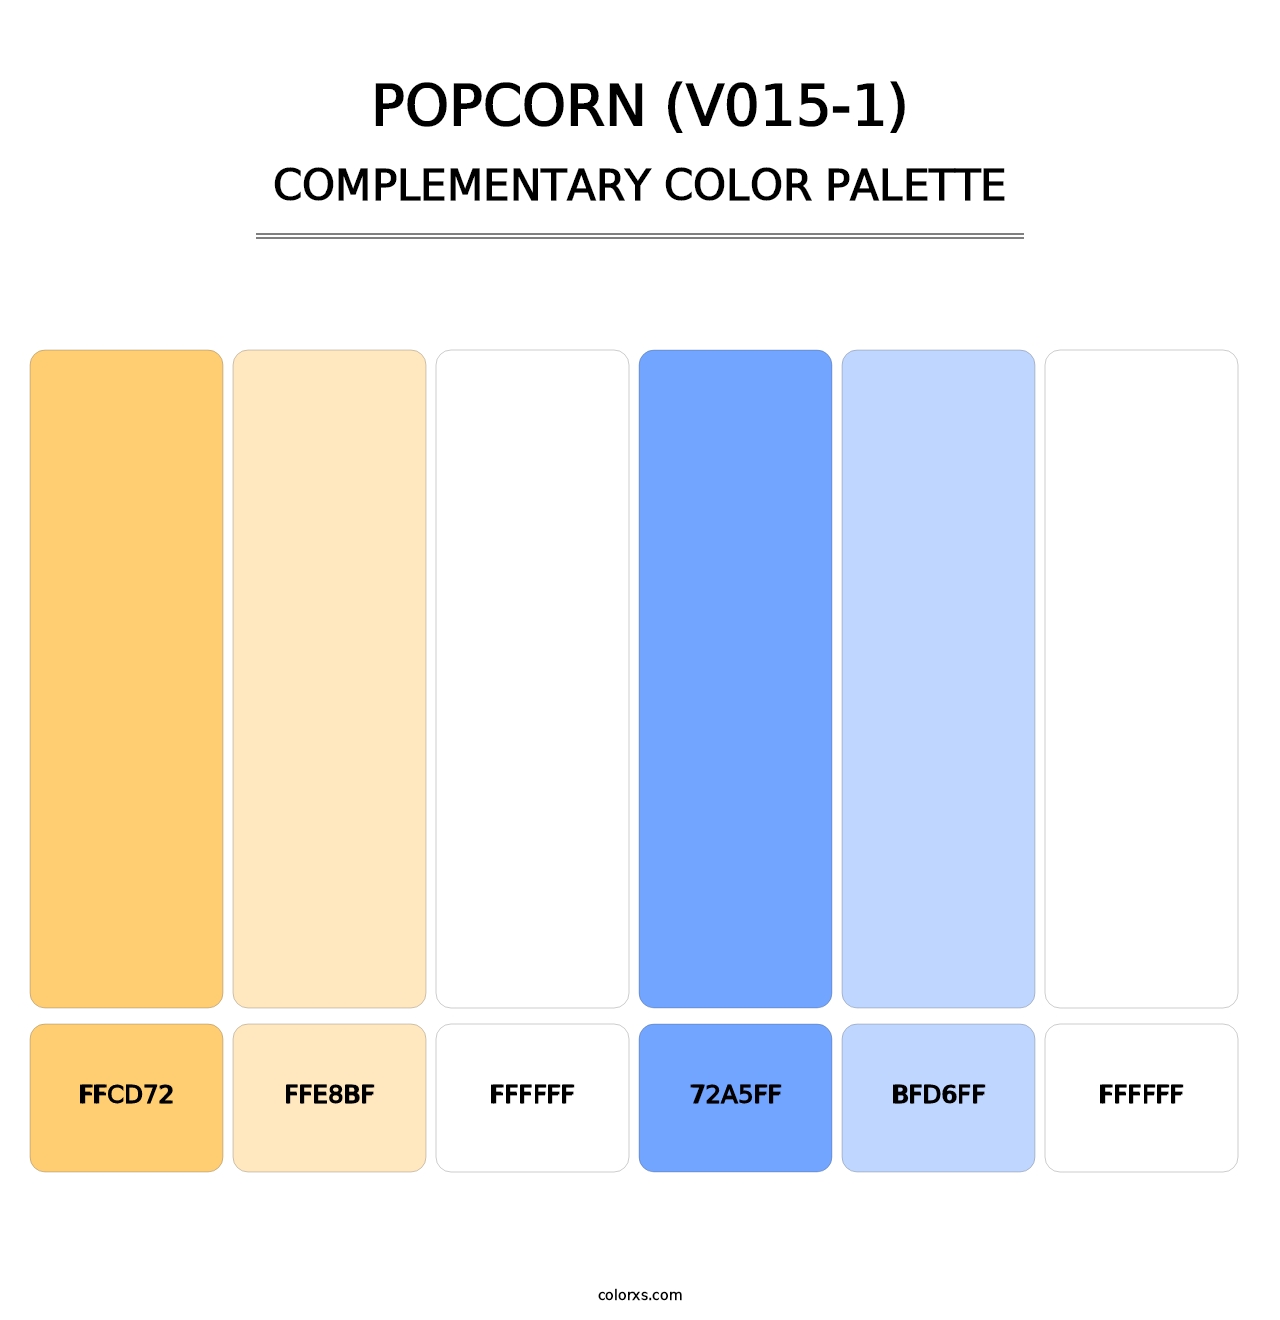 Popcorn (V015-1) - Complementary Color Palette